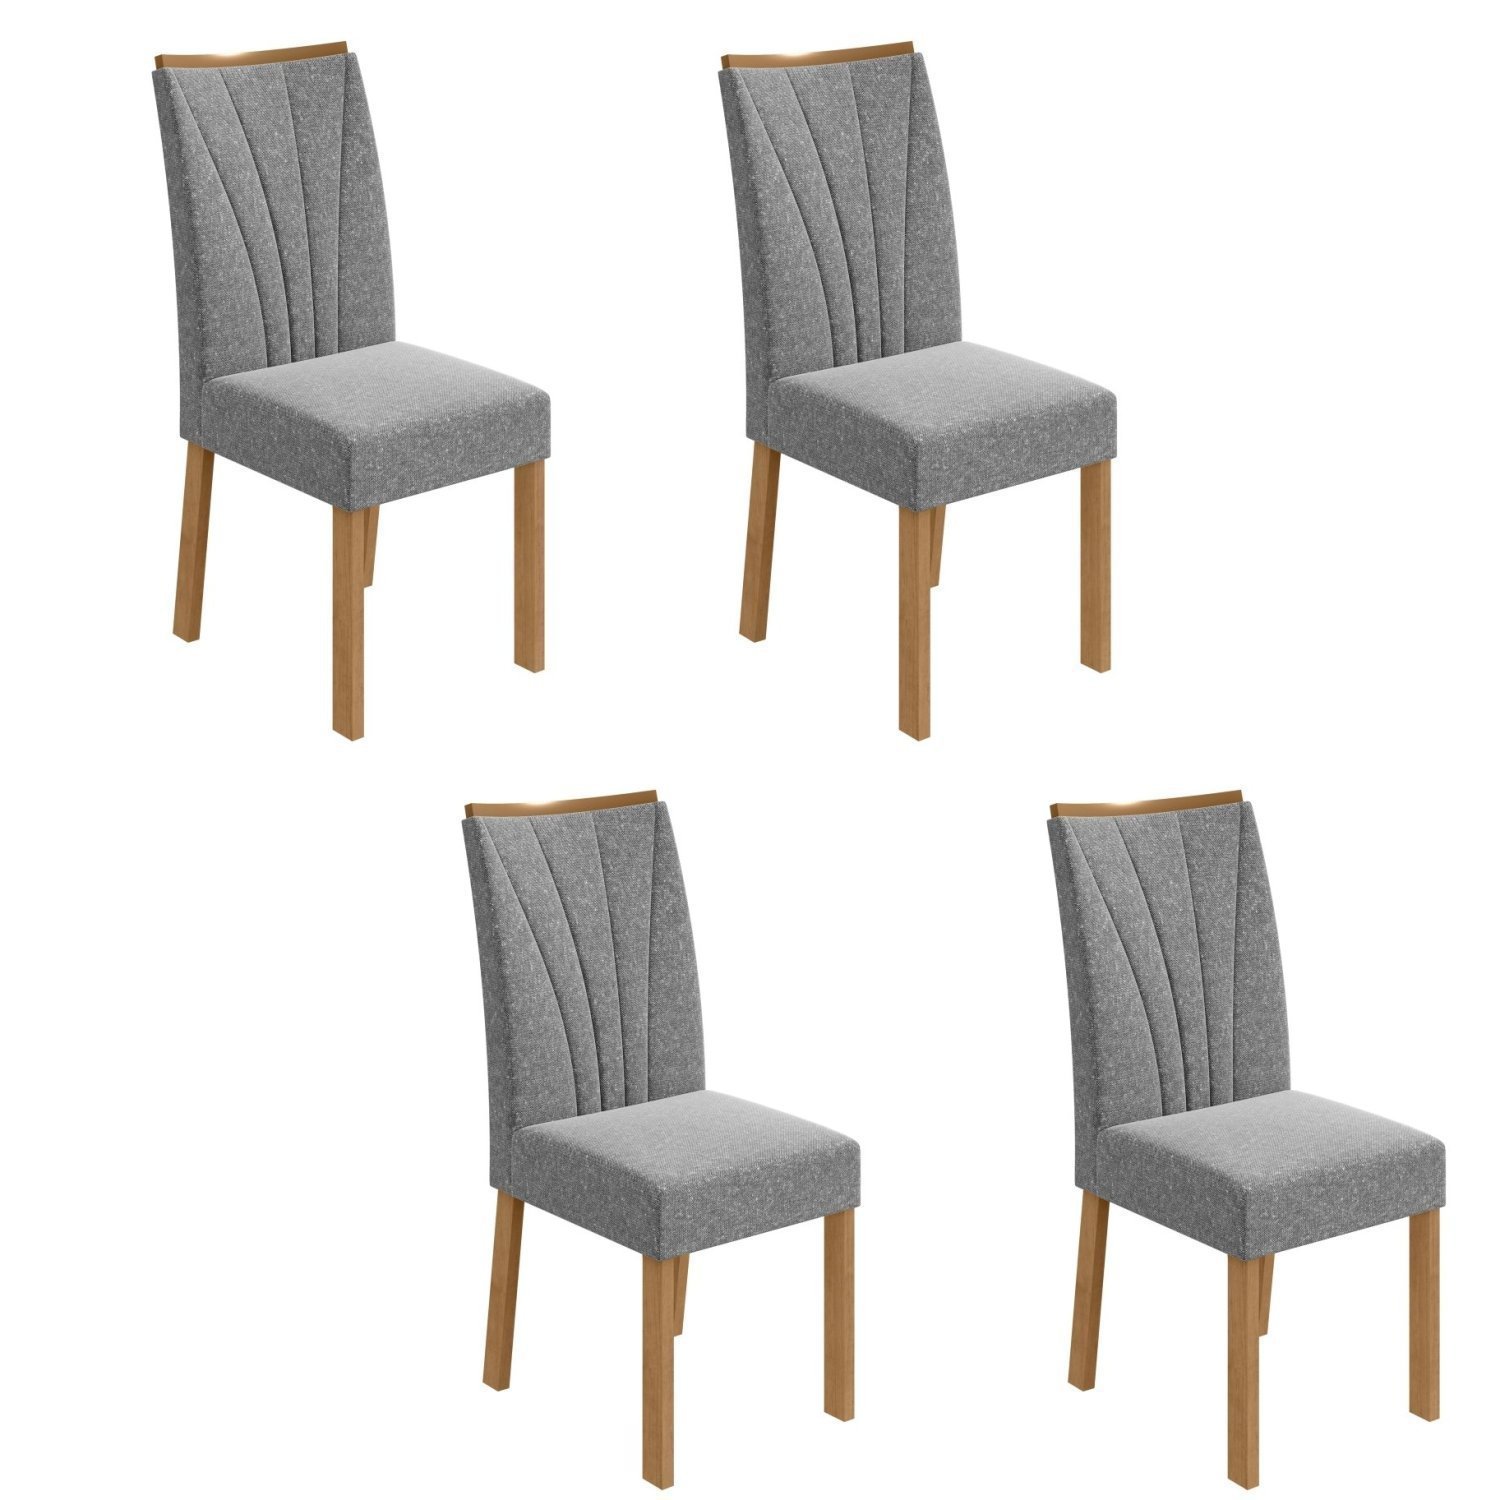 Conjunto 4 Cadeiras Estofadas Apogeu Móveis Lopas